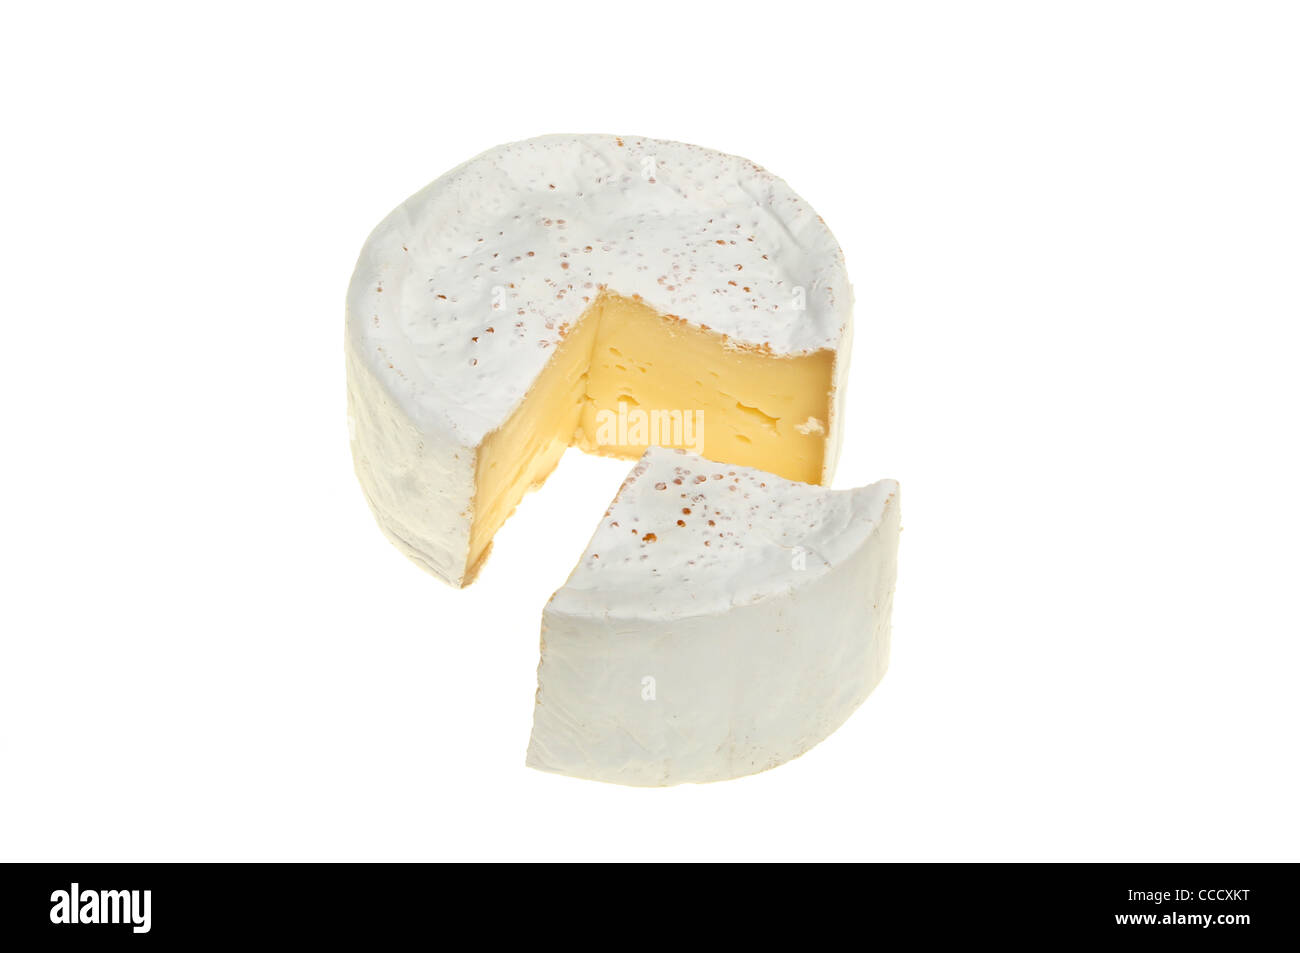 Runde der Camembert Käse mit einem Segment ausschneiden konnte als Kreisdiagramm verwendet werden Stockfoto